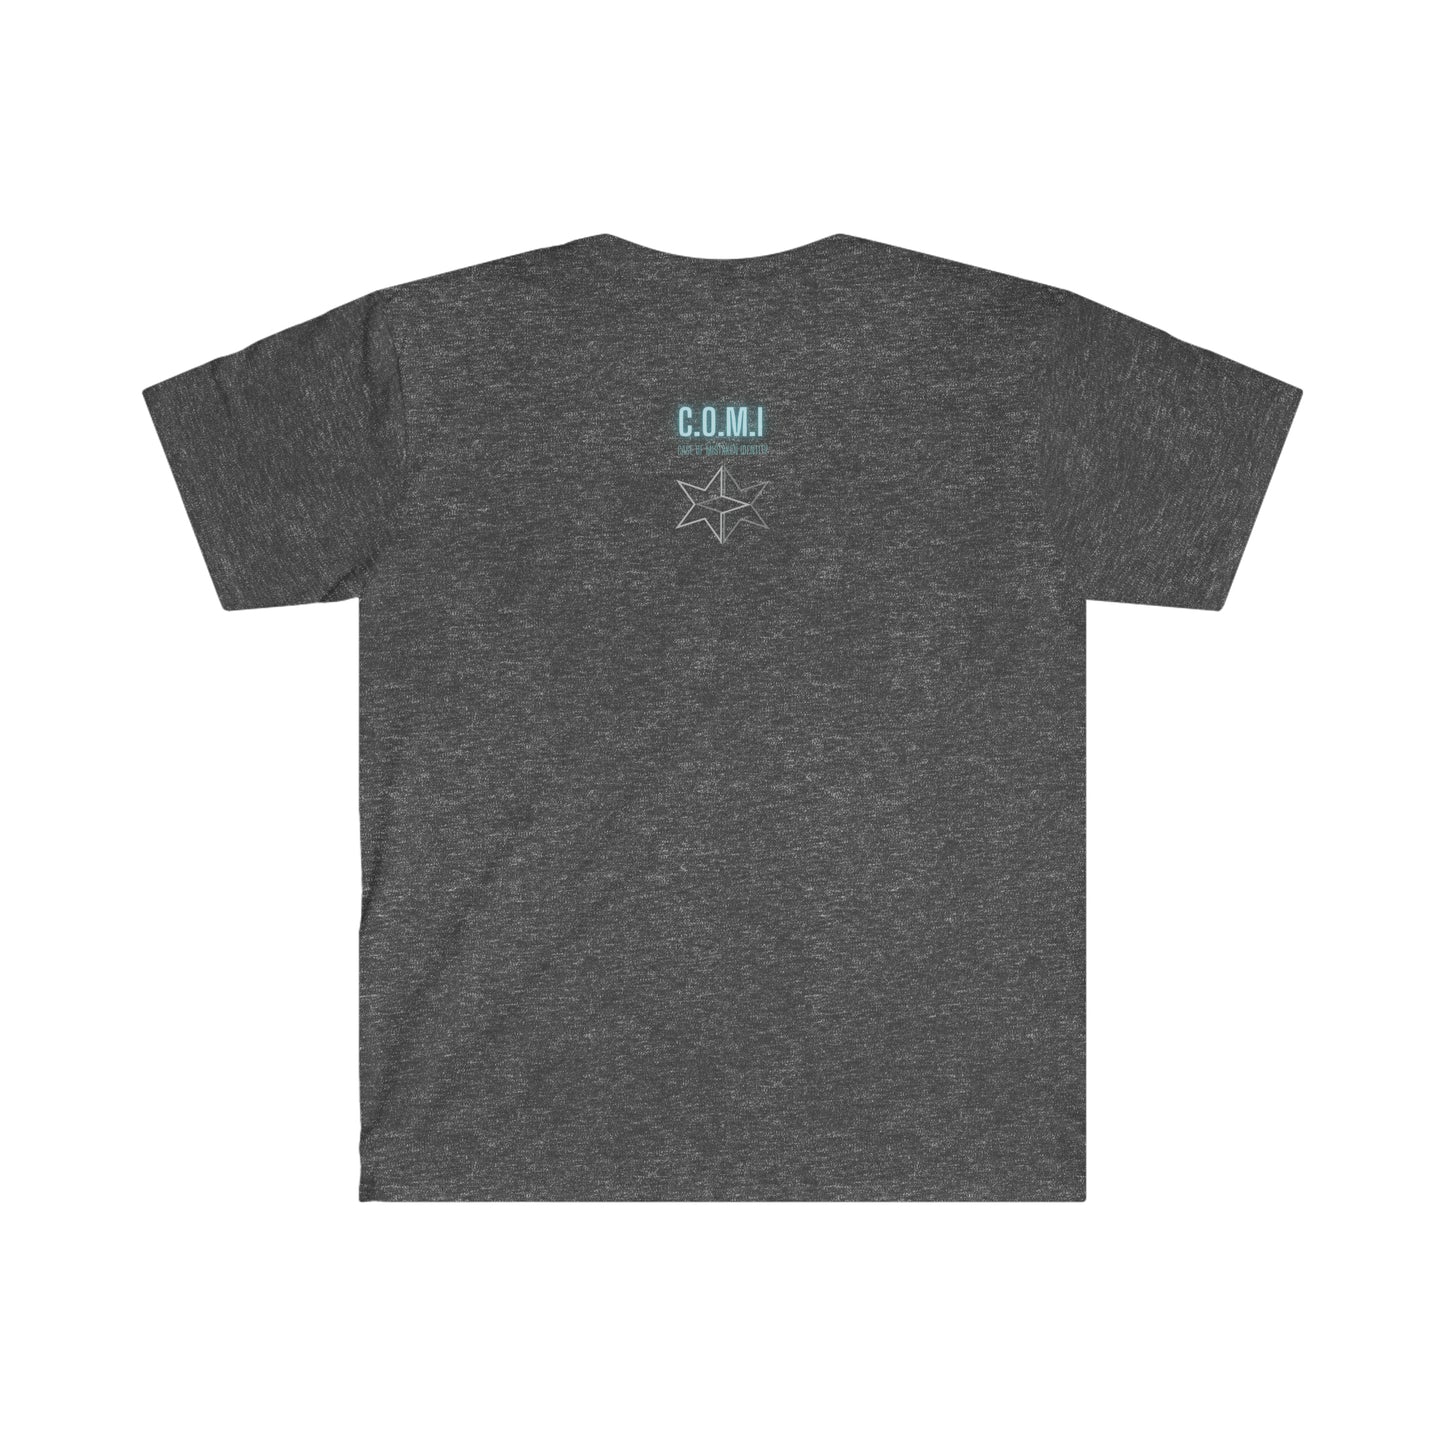 Eleanor - Unisex Softstyle T-Shirt